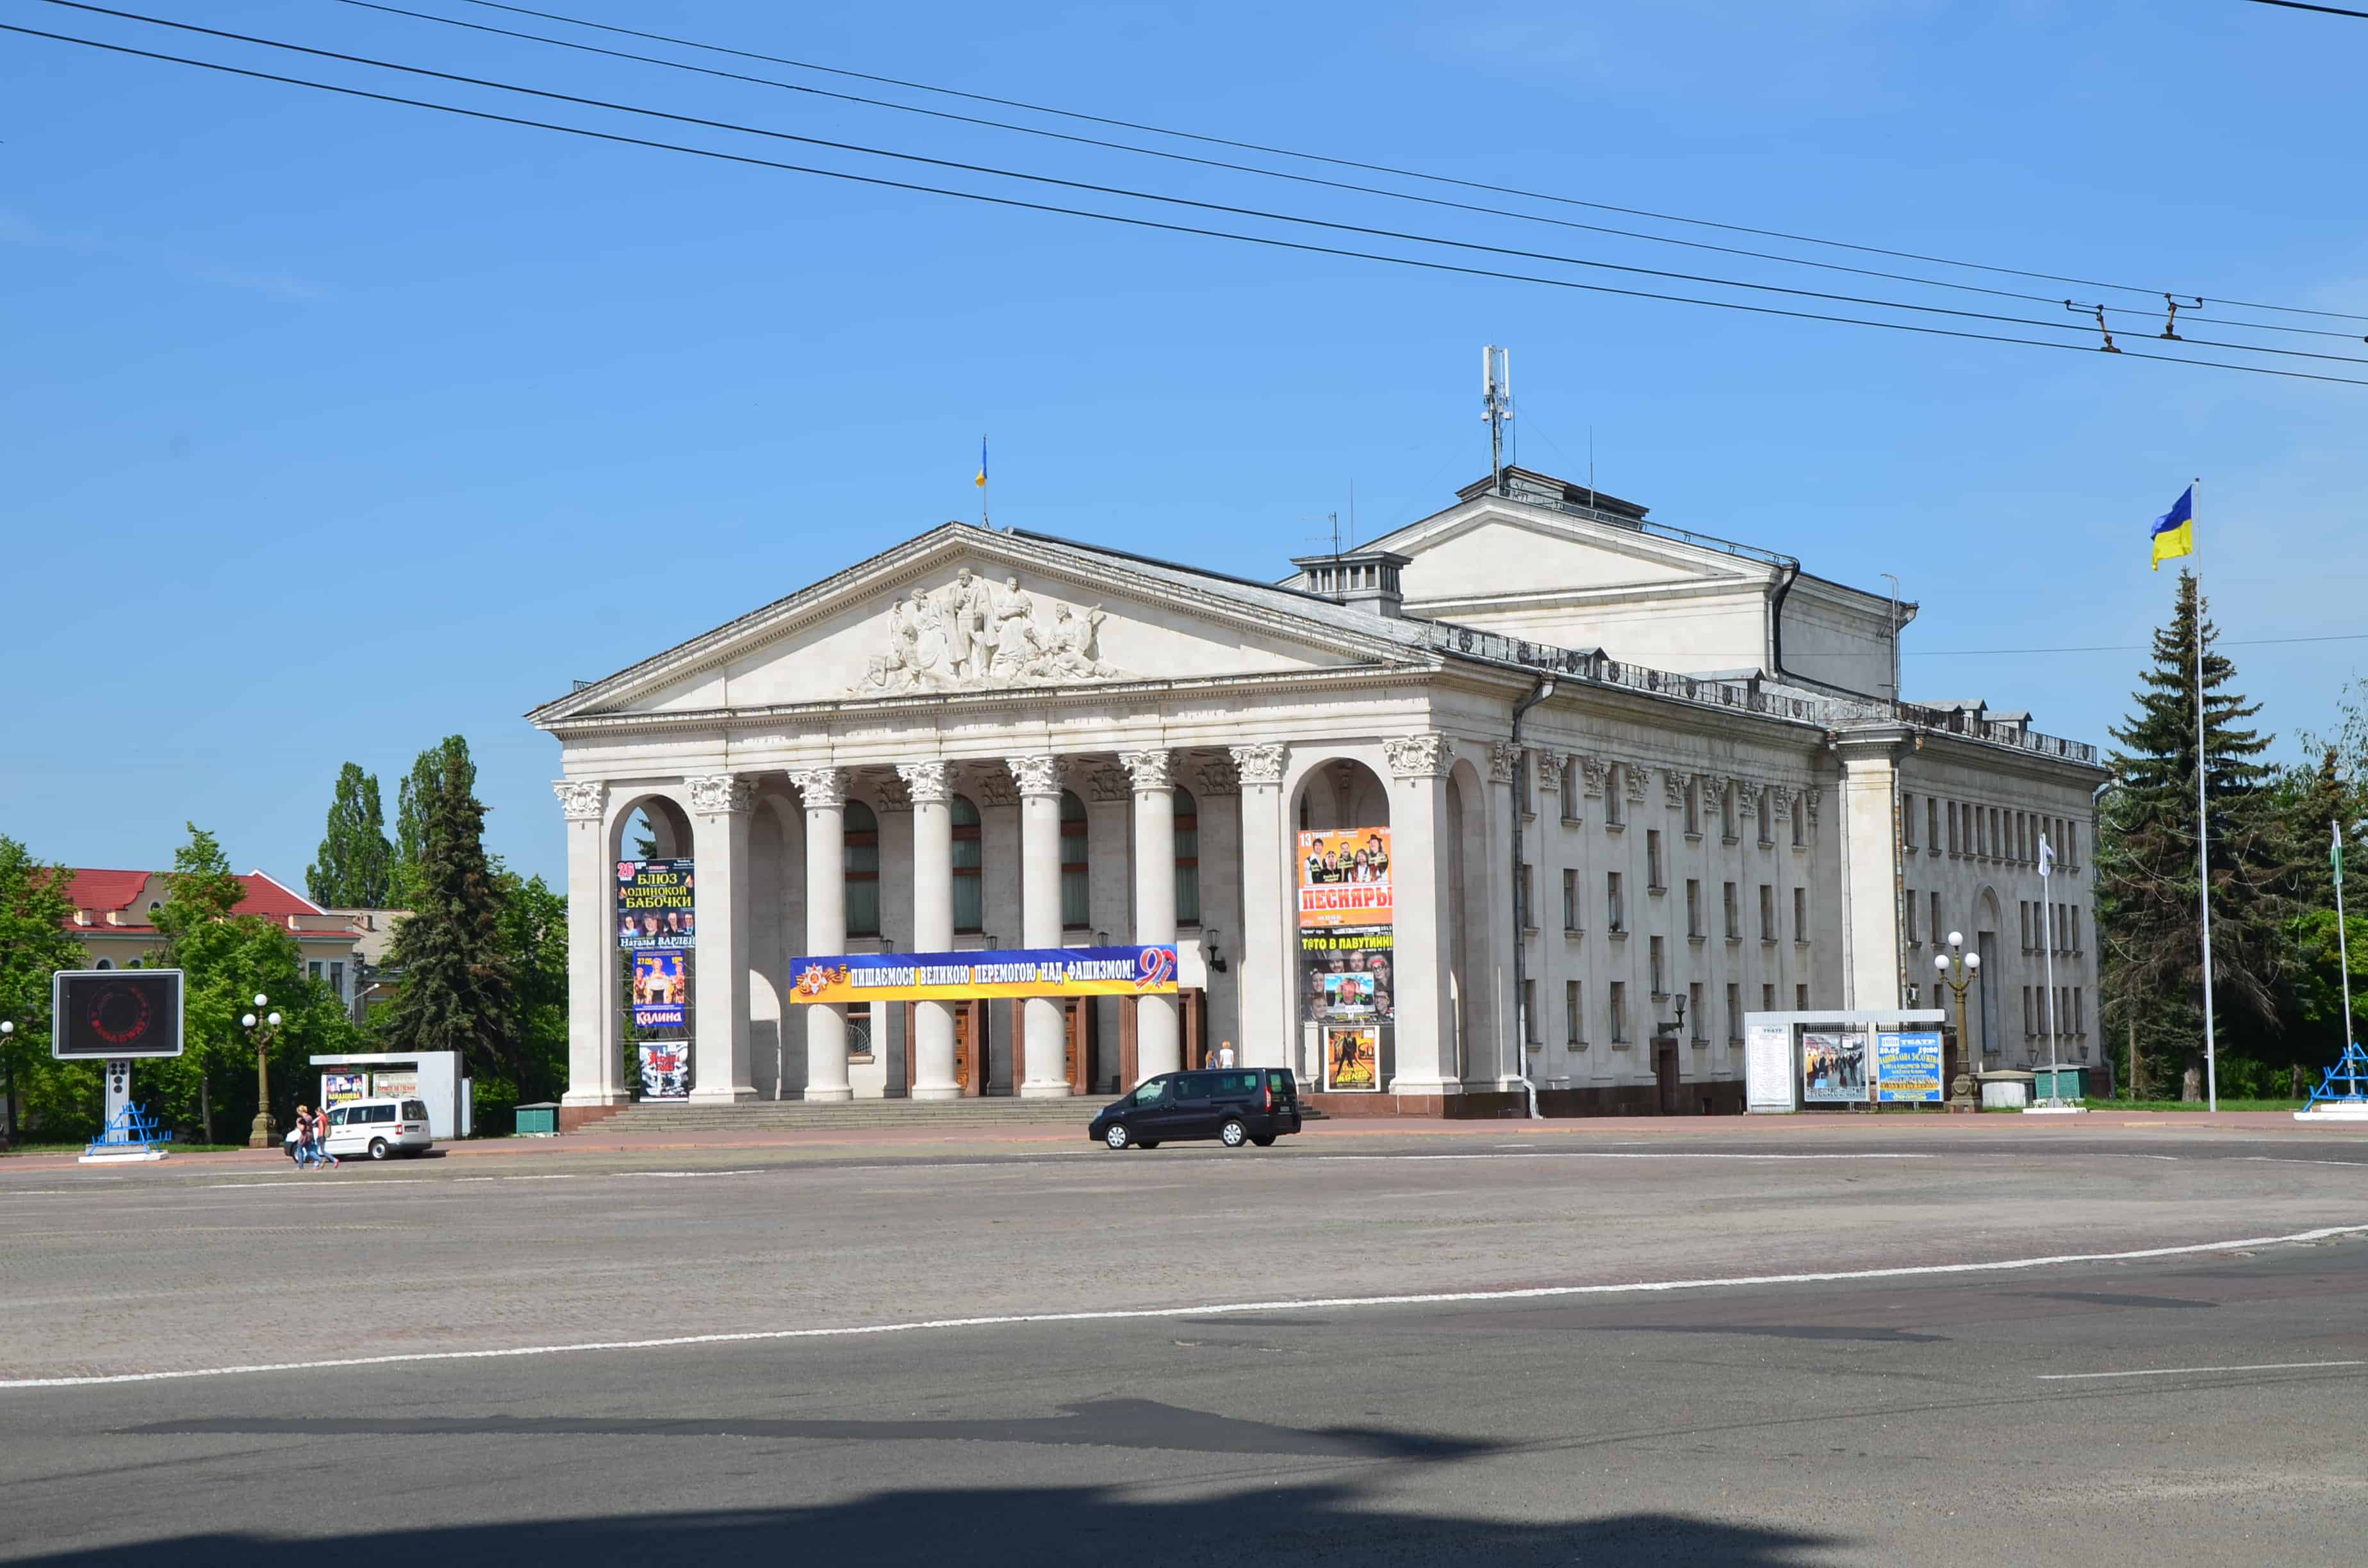 Chernihiv Drama Theatre in Chernihiv, Ukraine